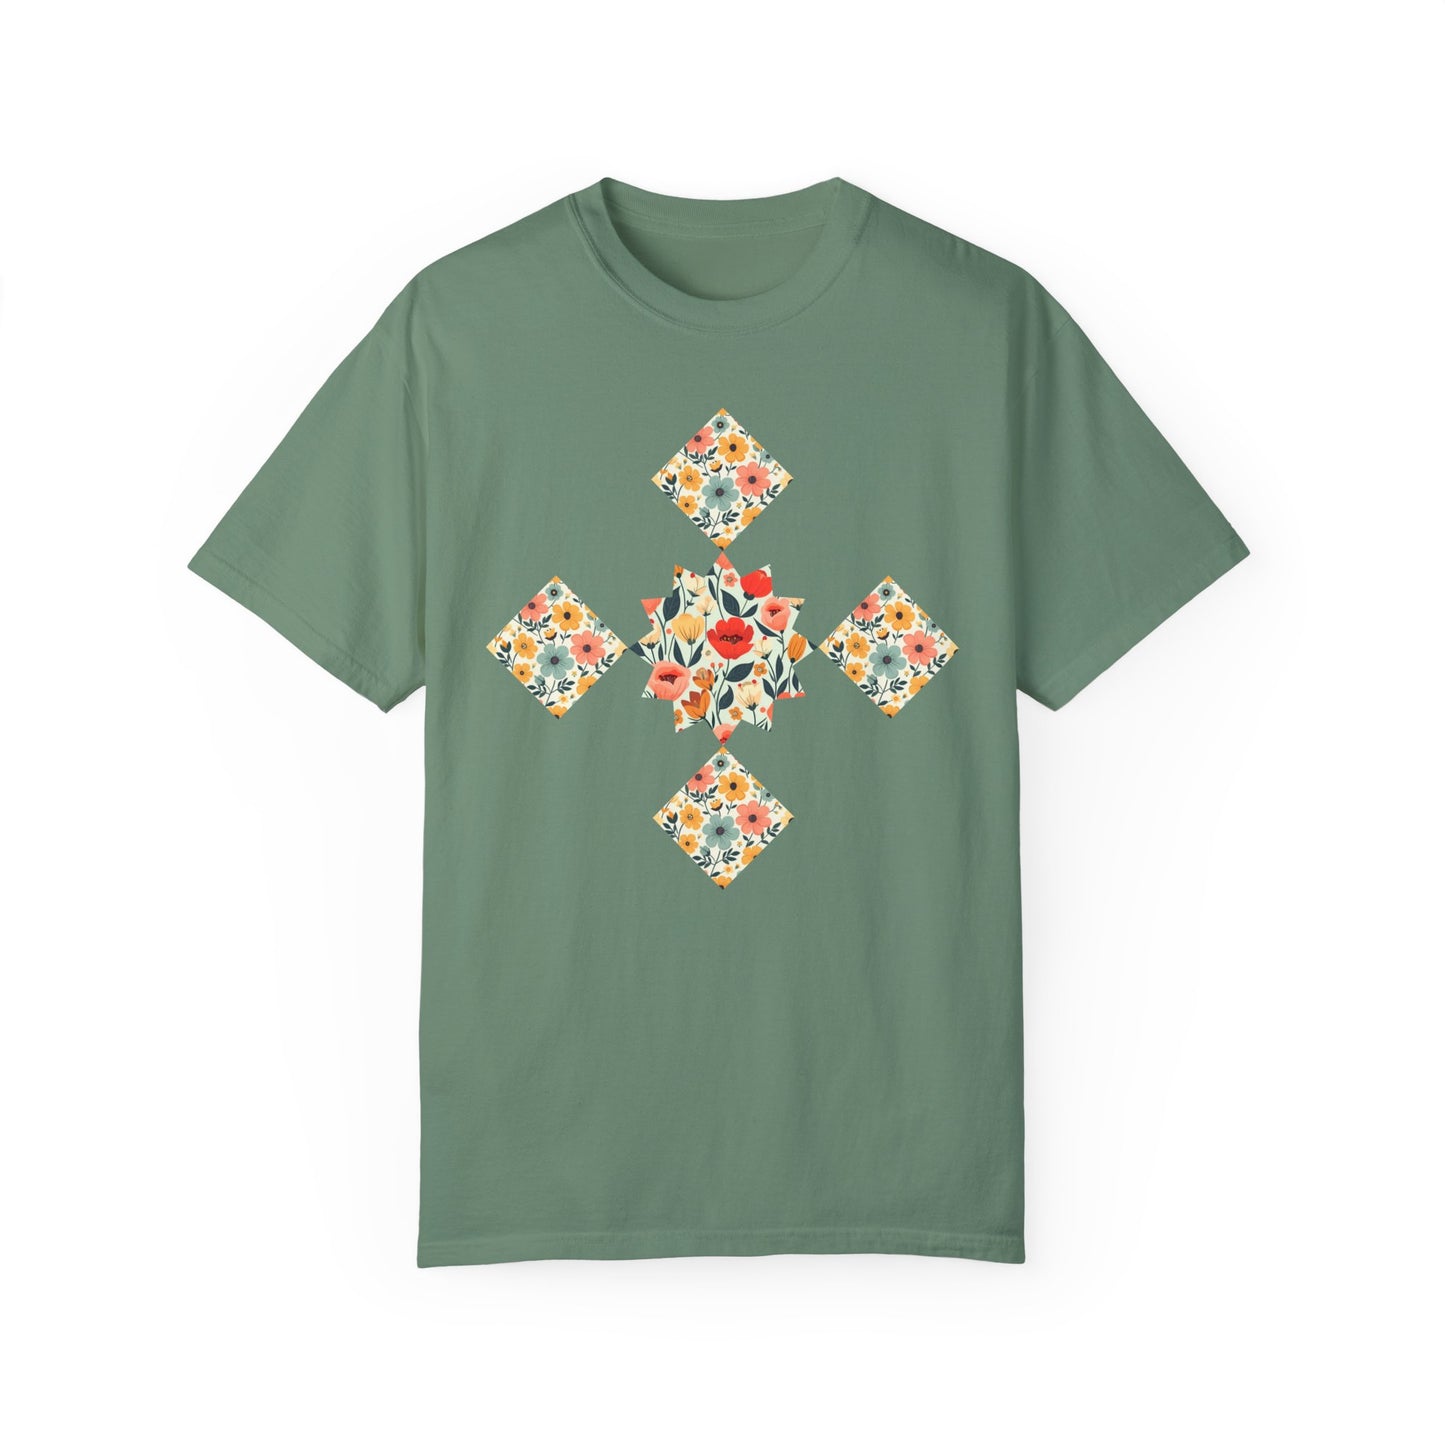 Camiseta de manualidades, regalo de quilting para mamá quilter, ropa estilo cottagecore.